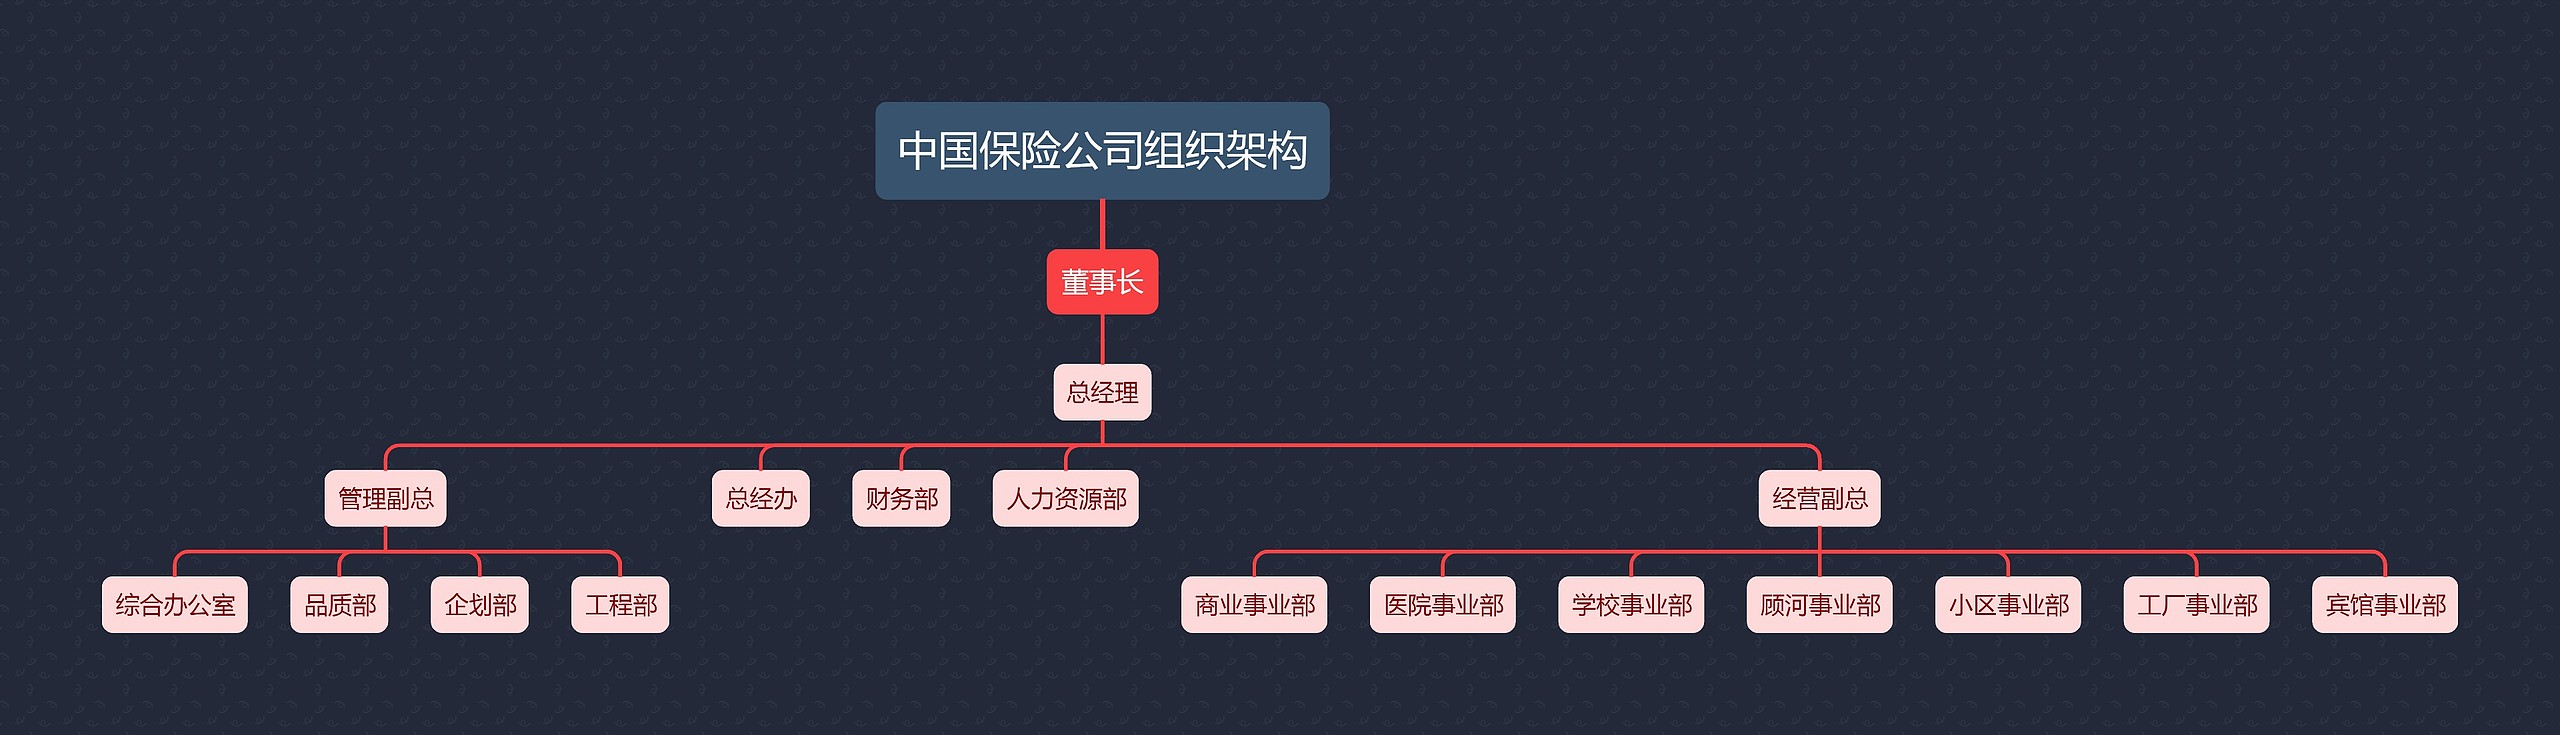 中国保险公司组织架构思维导图